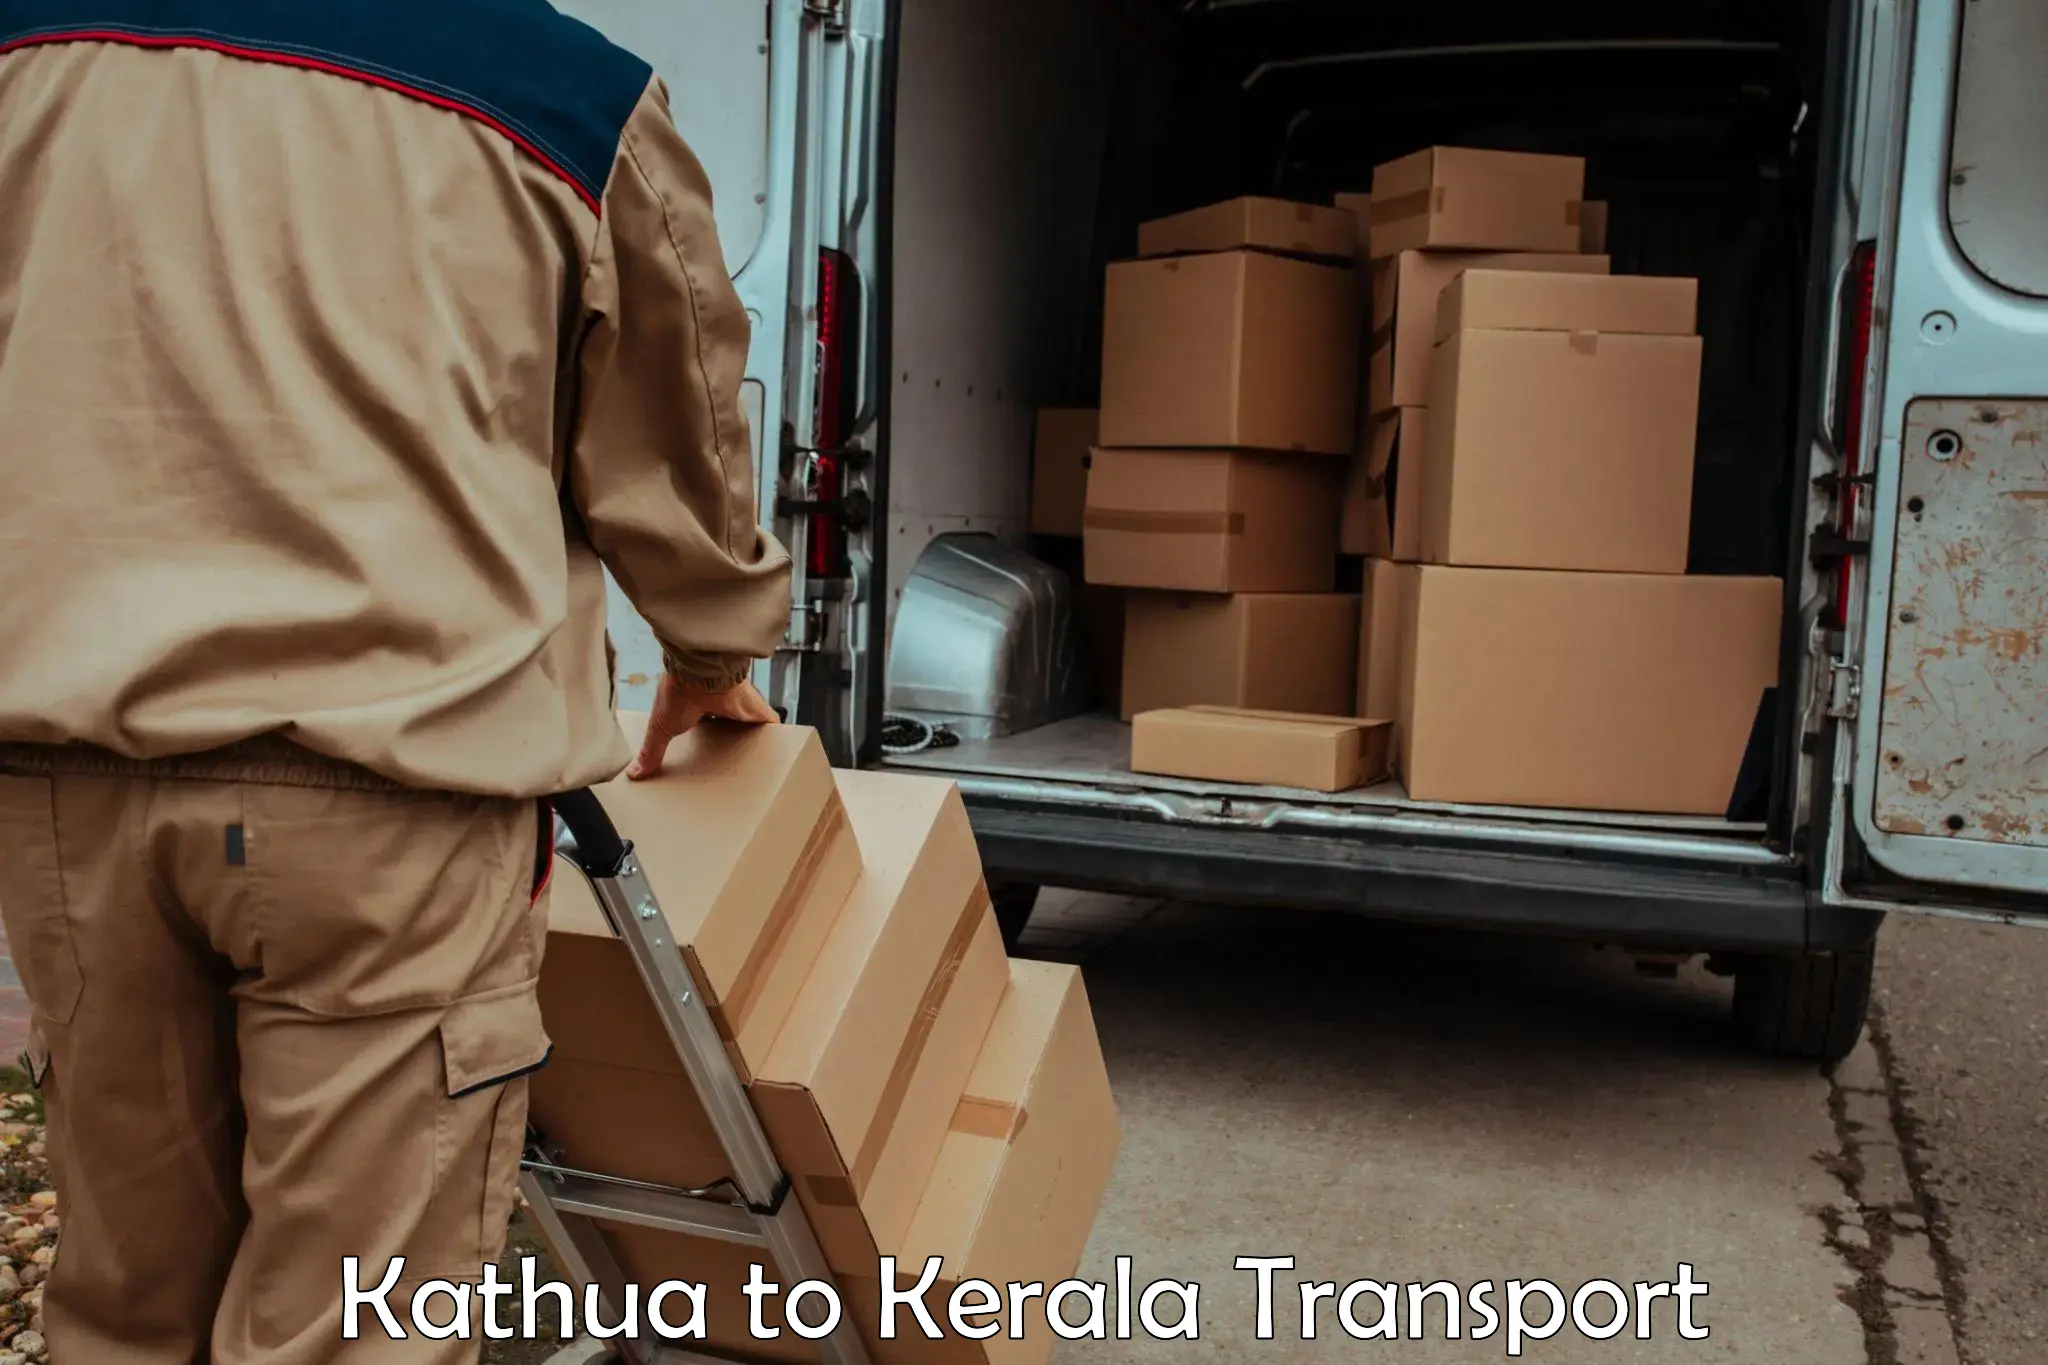 Transport services Kathua to IIT Palakkad